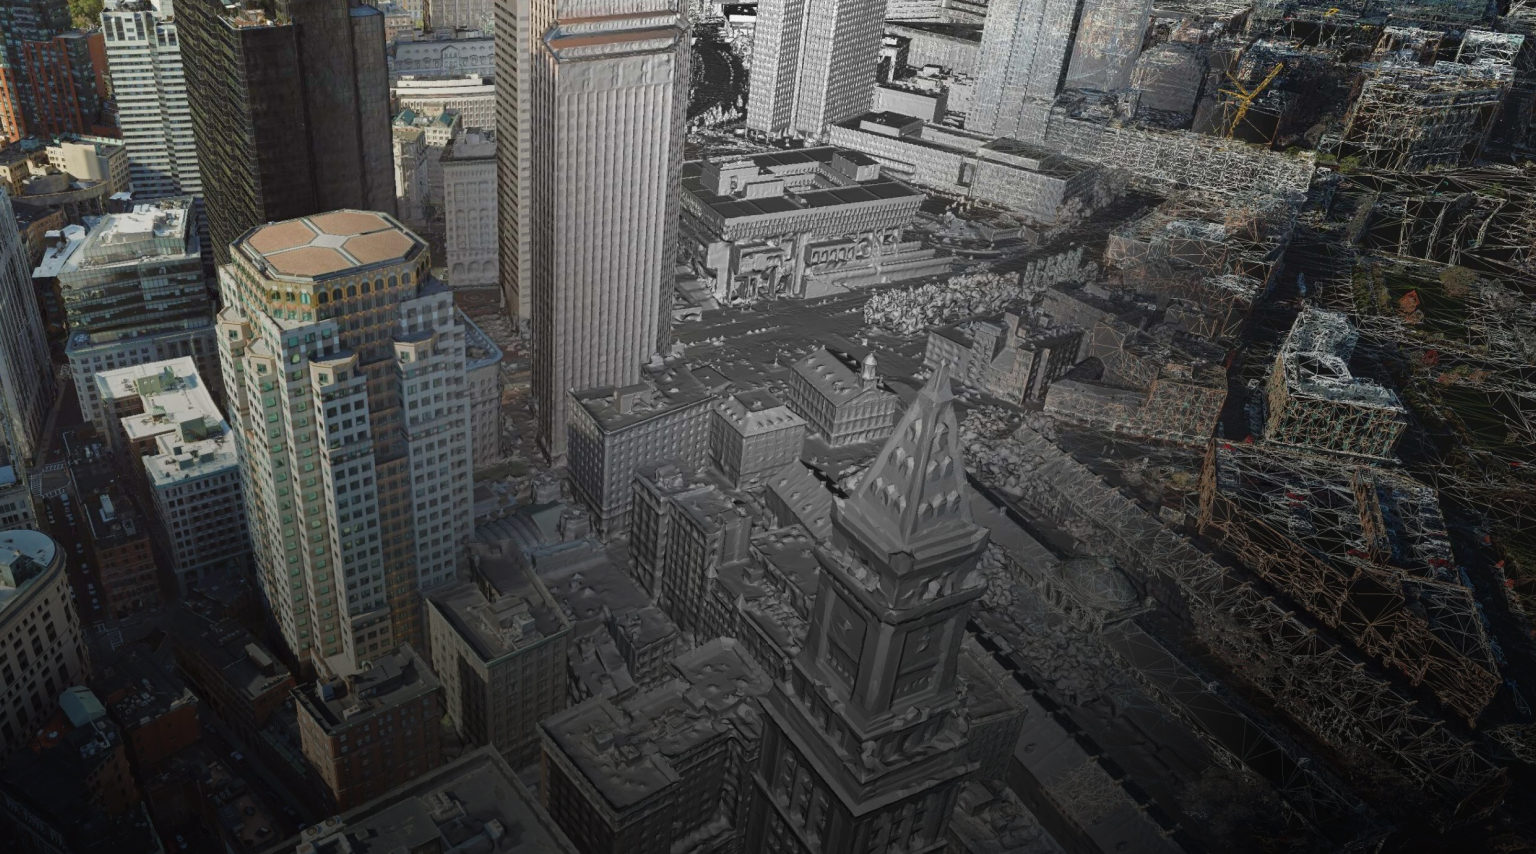 市中心地区的摄影测量图像显示了大大小小的 3D 建筑物